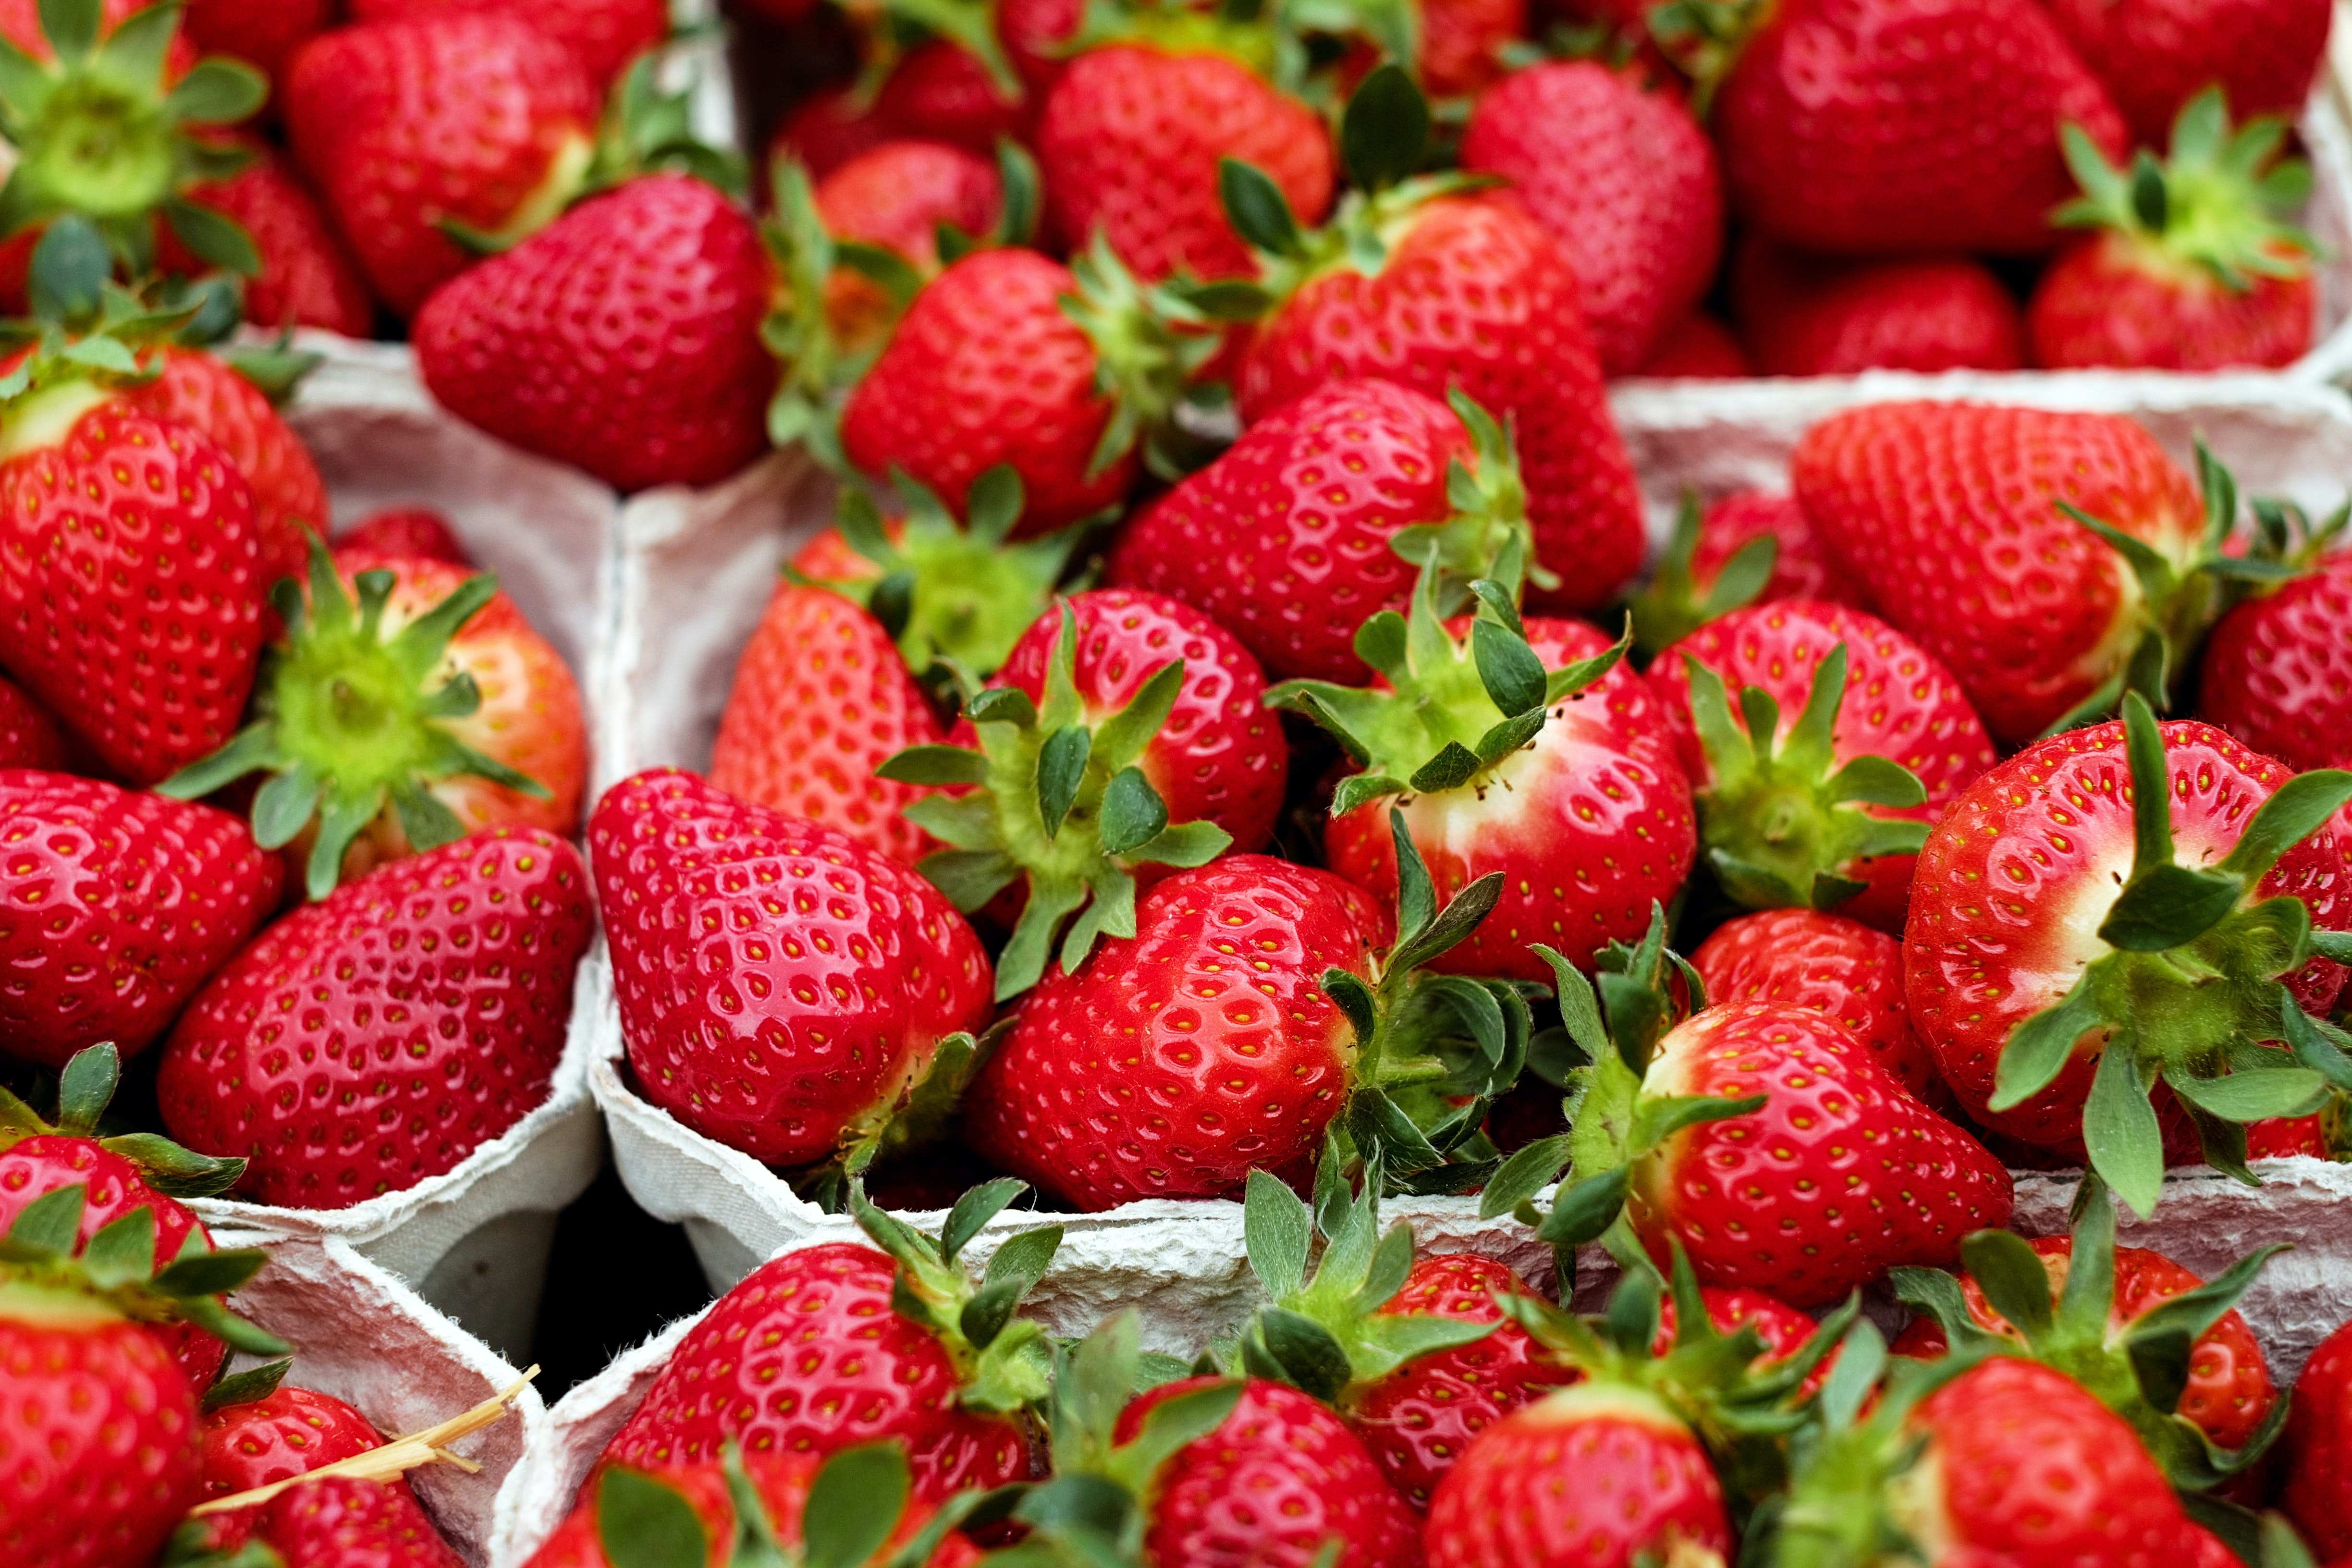 H-E-B More Fruit Strawberry Fruit Spread - Shop Jelly & Jam at H-E-B